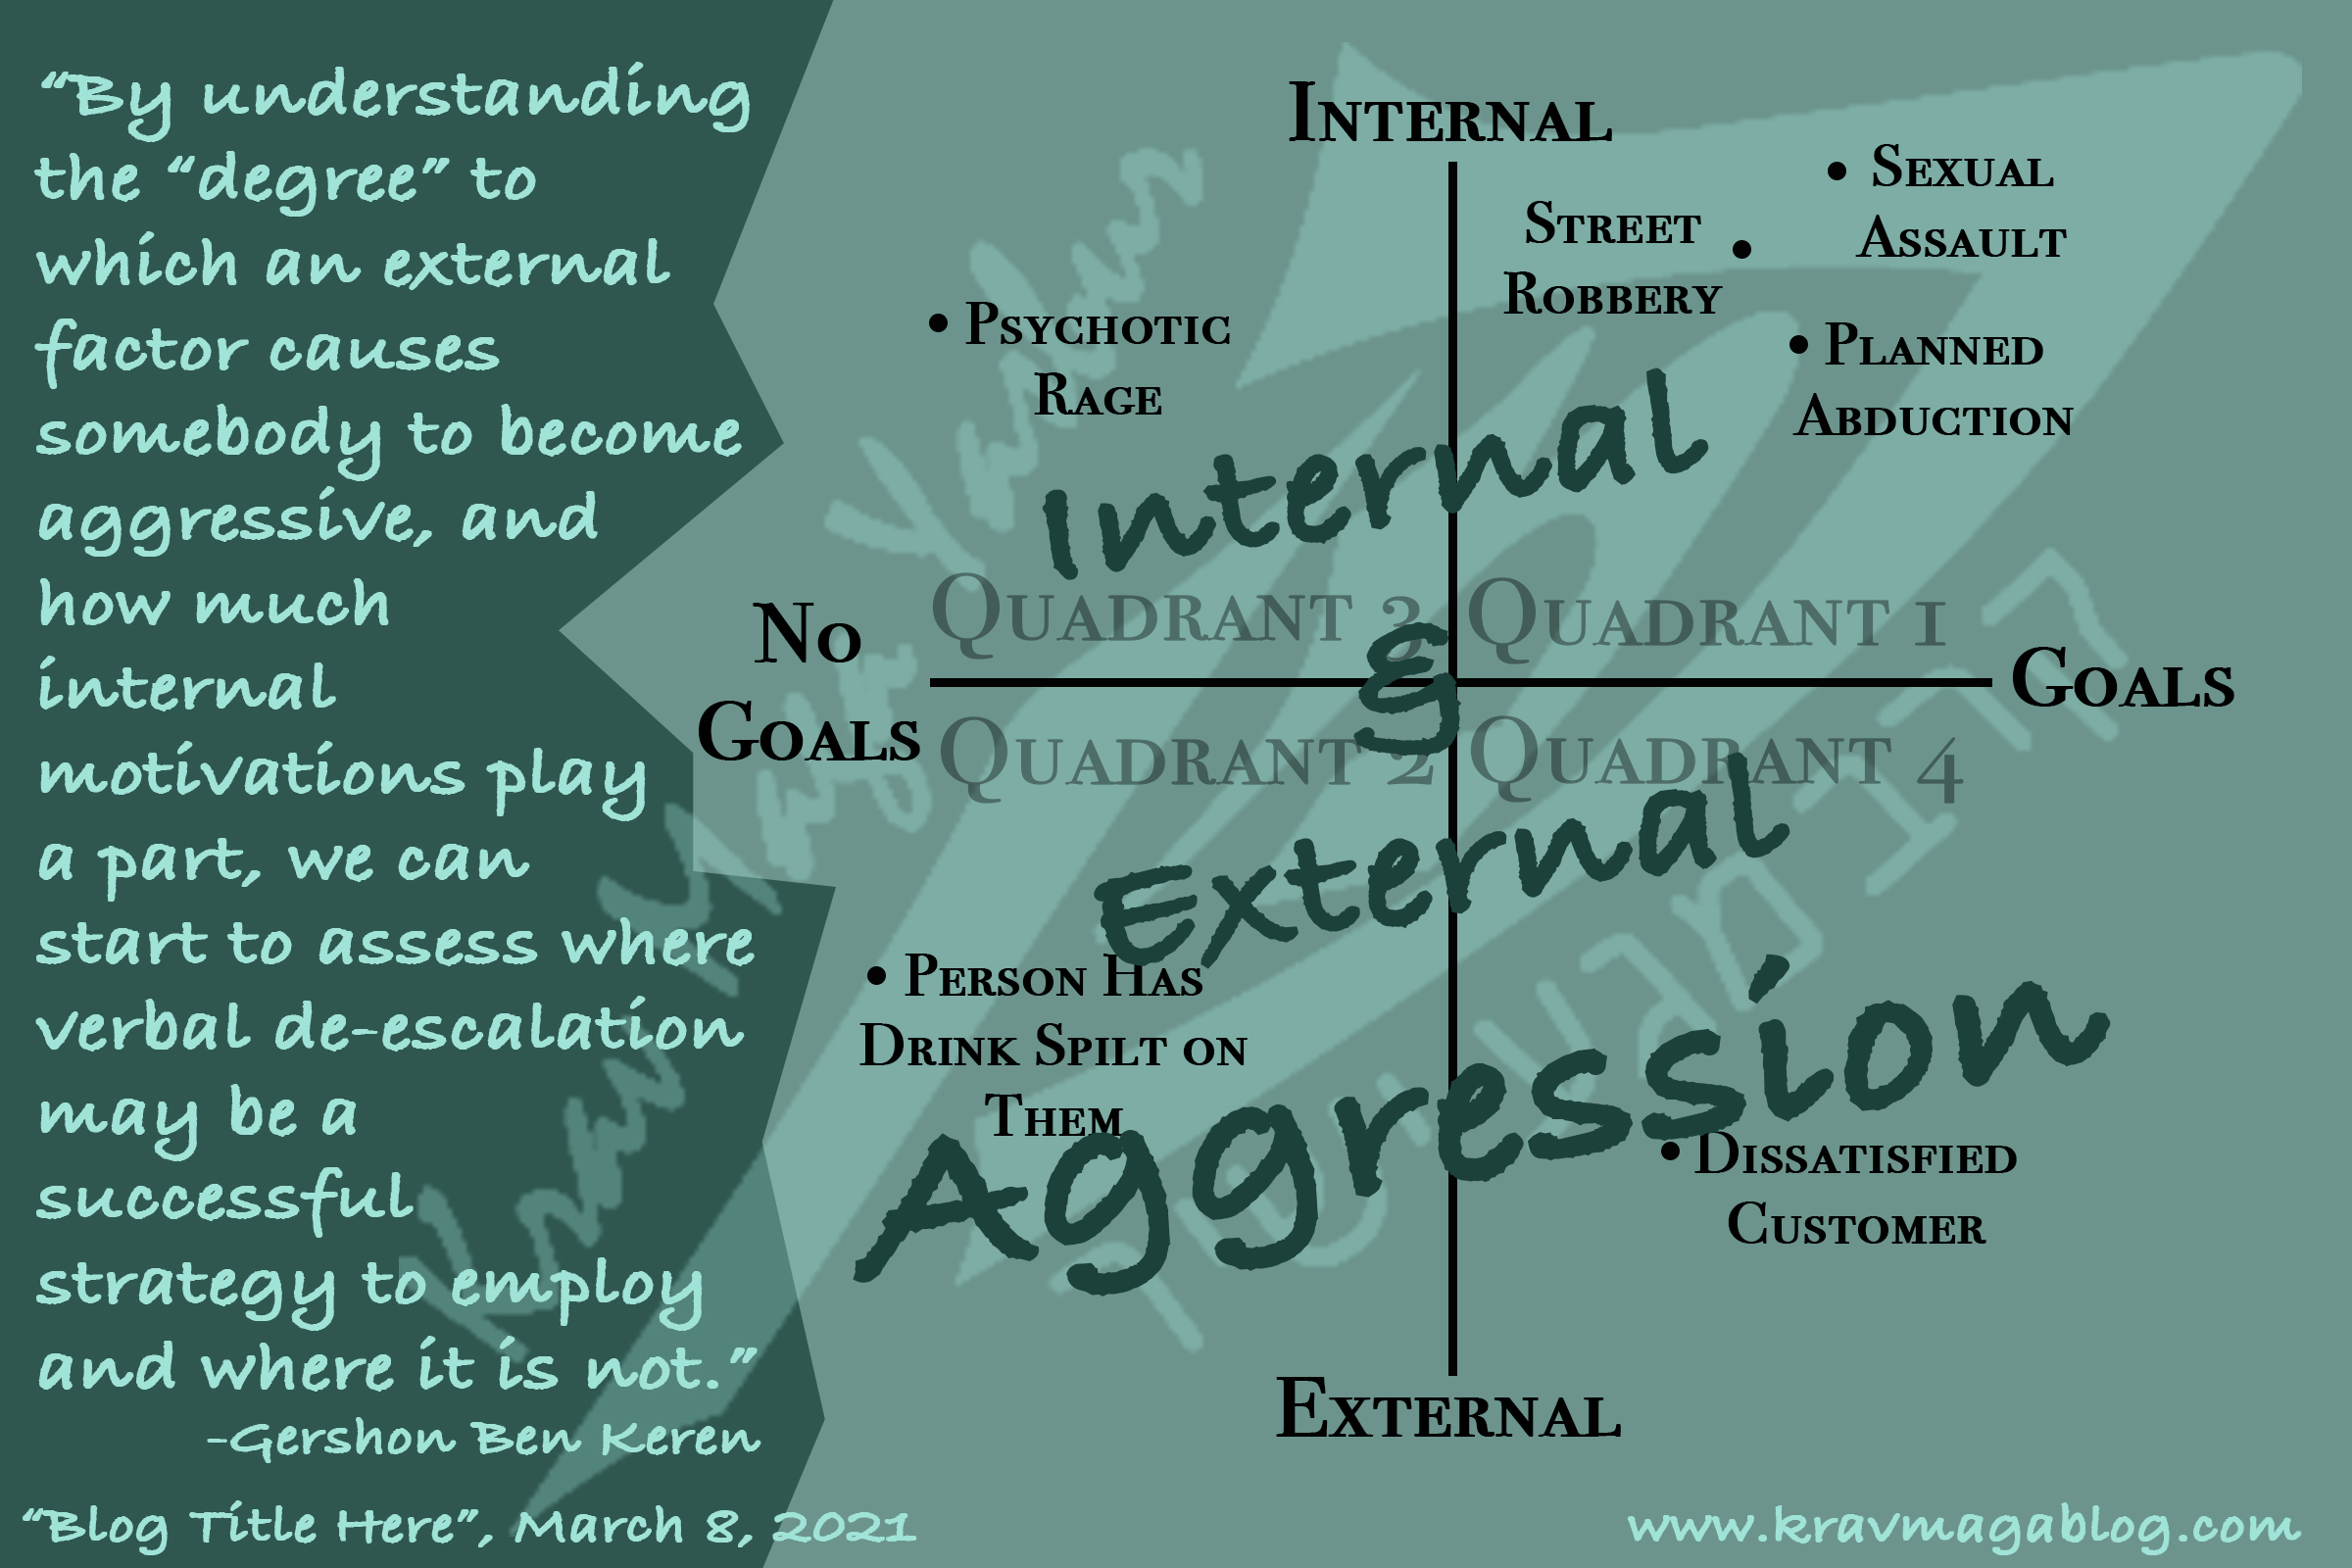 Blog About Internal & External Aggression